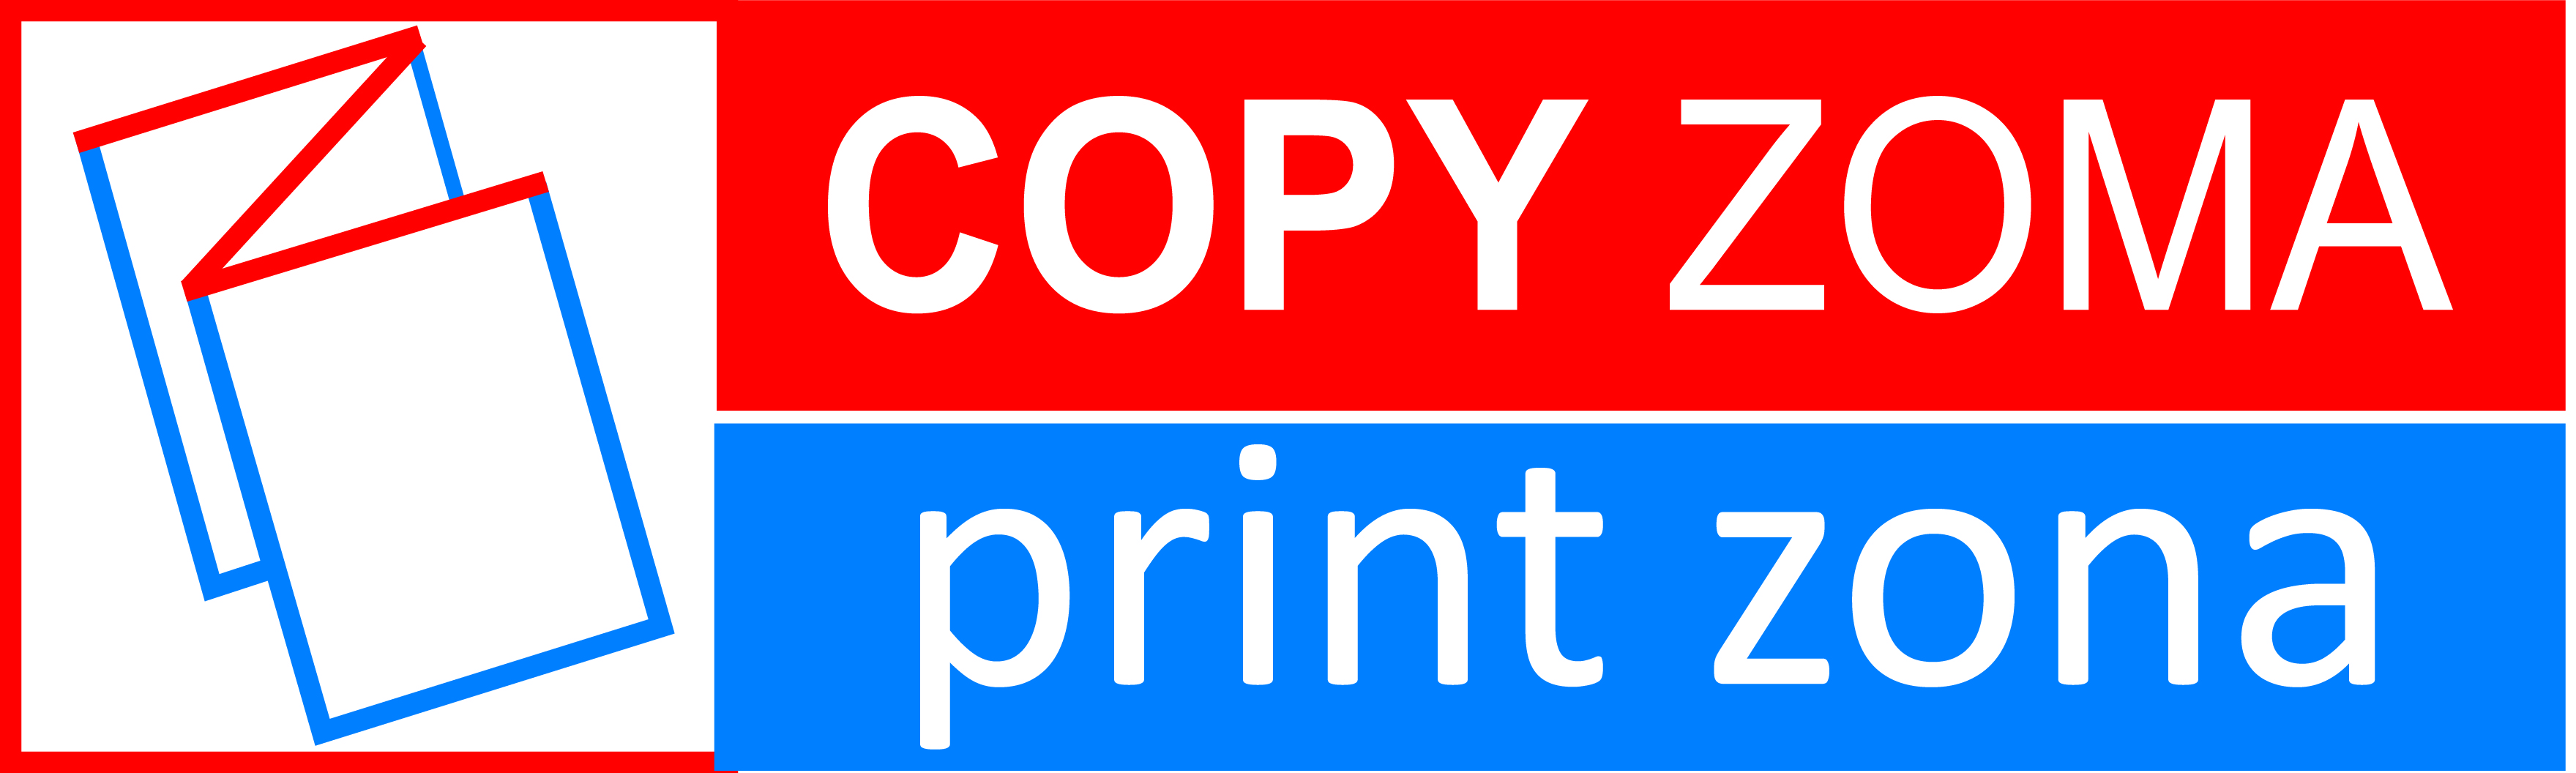 Copy Zoma | Print Zona